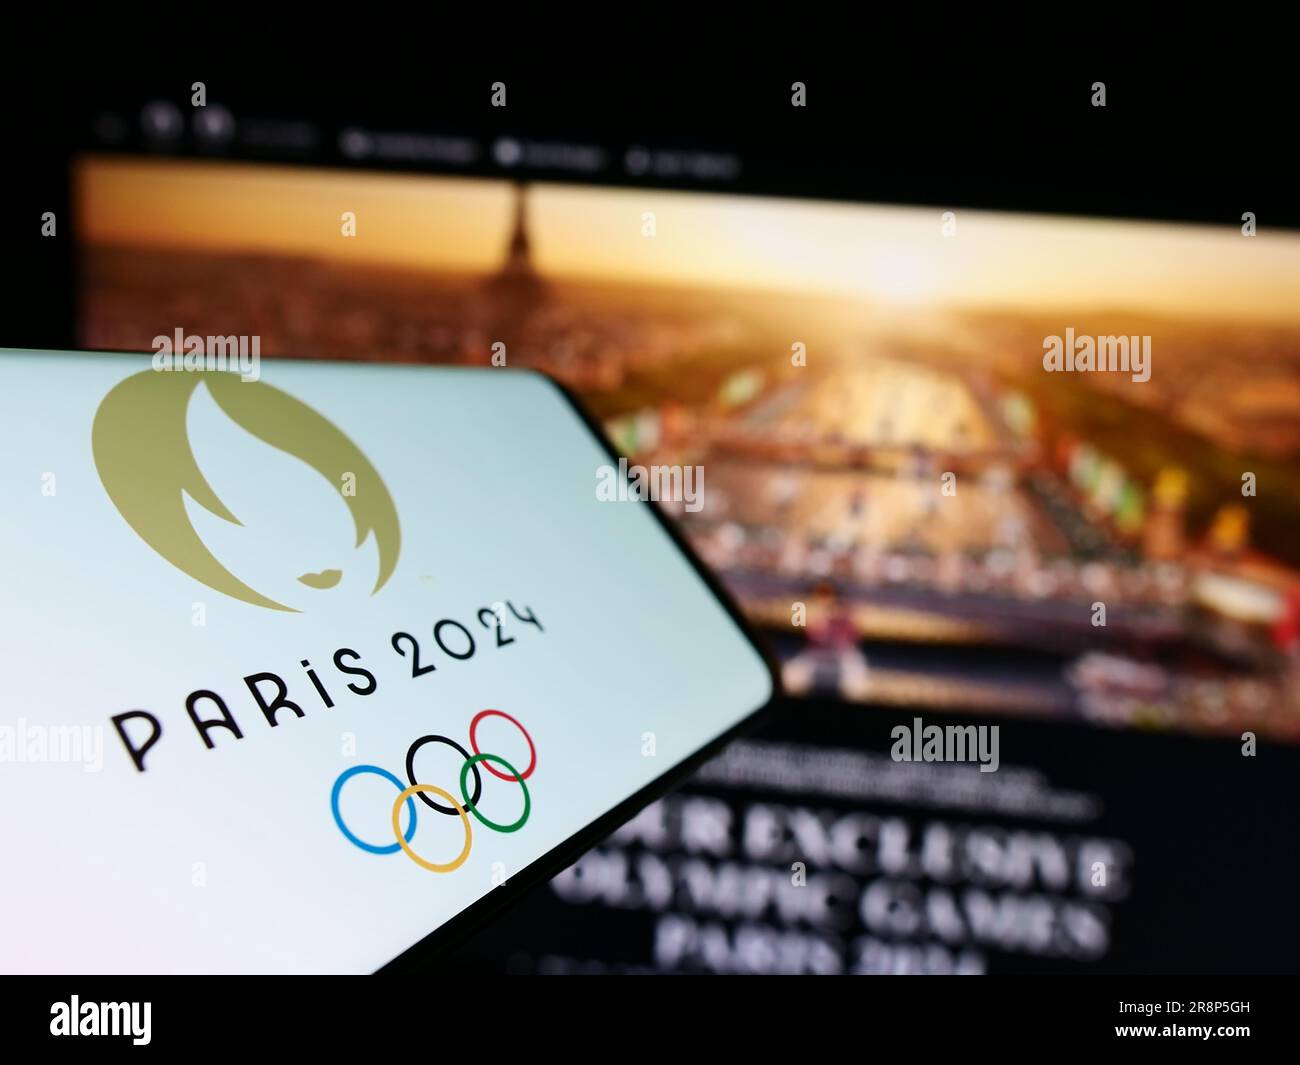 Cellulare con logo delle Olimpiadi estive di Parigi 2024 sullo schermo davanti al sito web. Mettere a fuoco il display centrale sinistro del telefono. Foto Stock